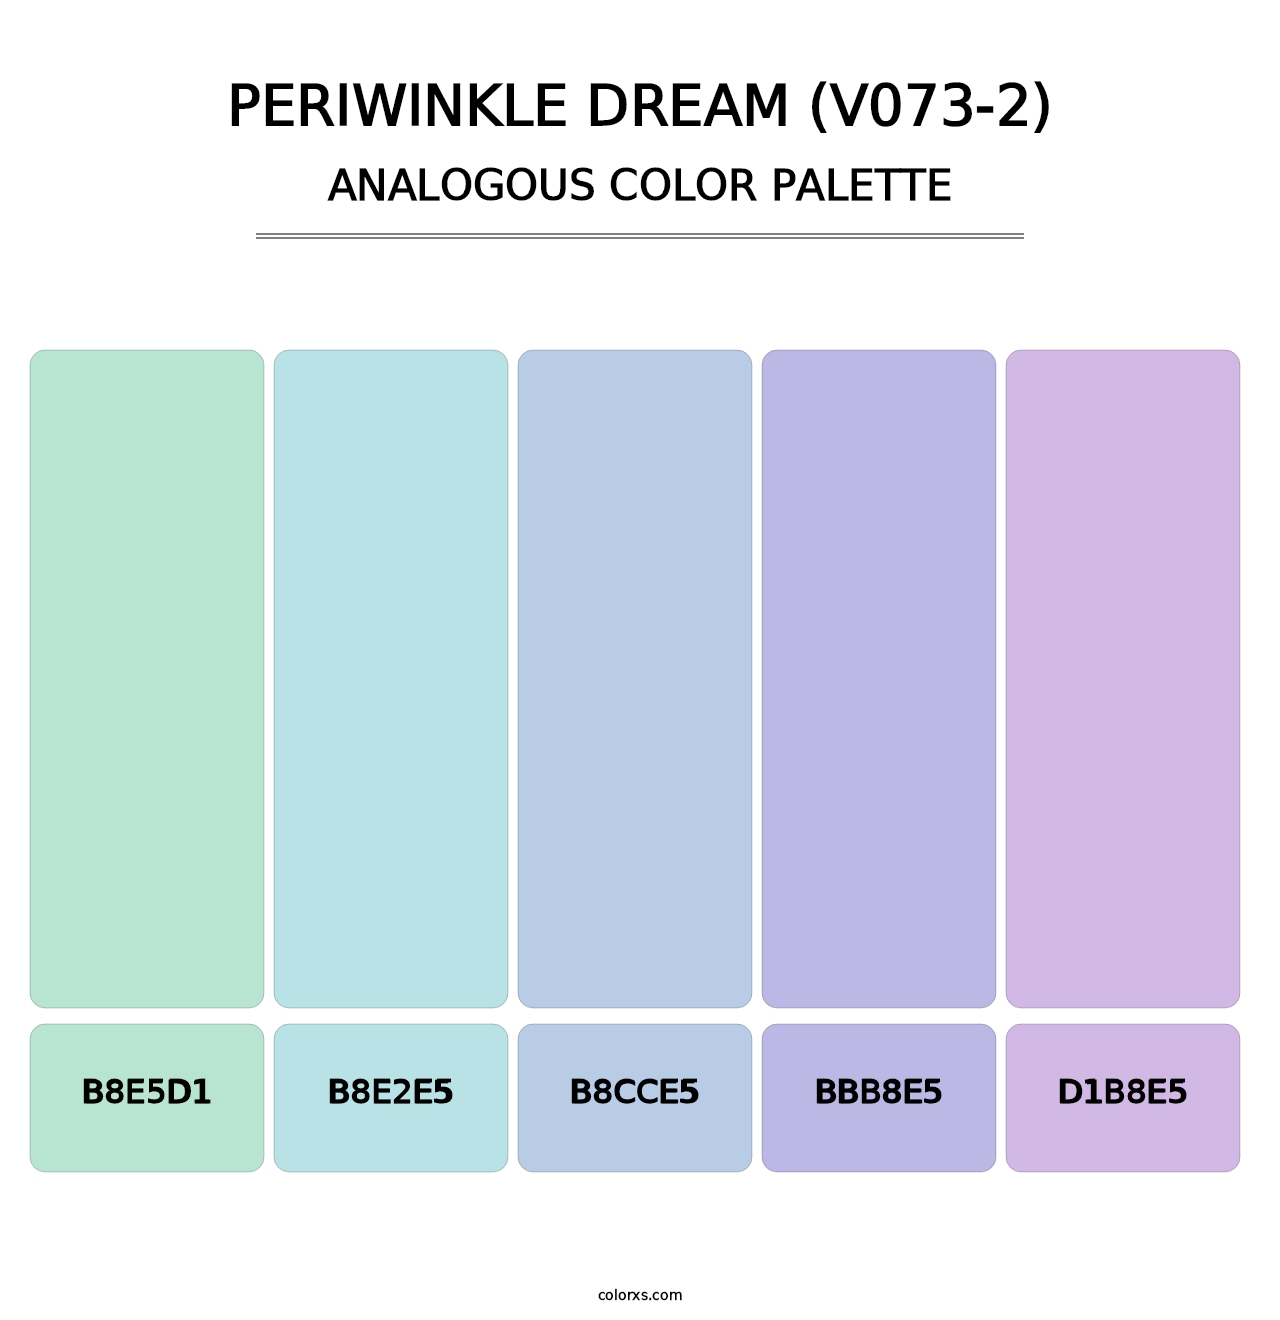 Periwinkle Dream (V073-2) - Analogous Color Palette